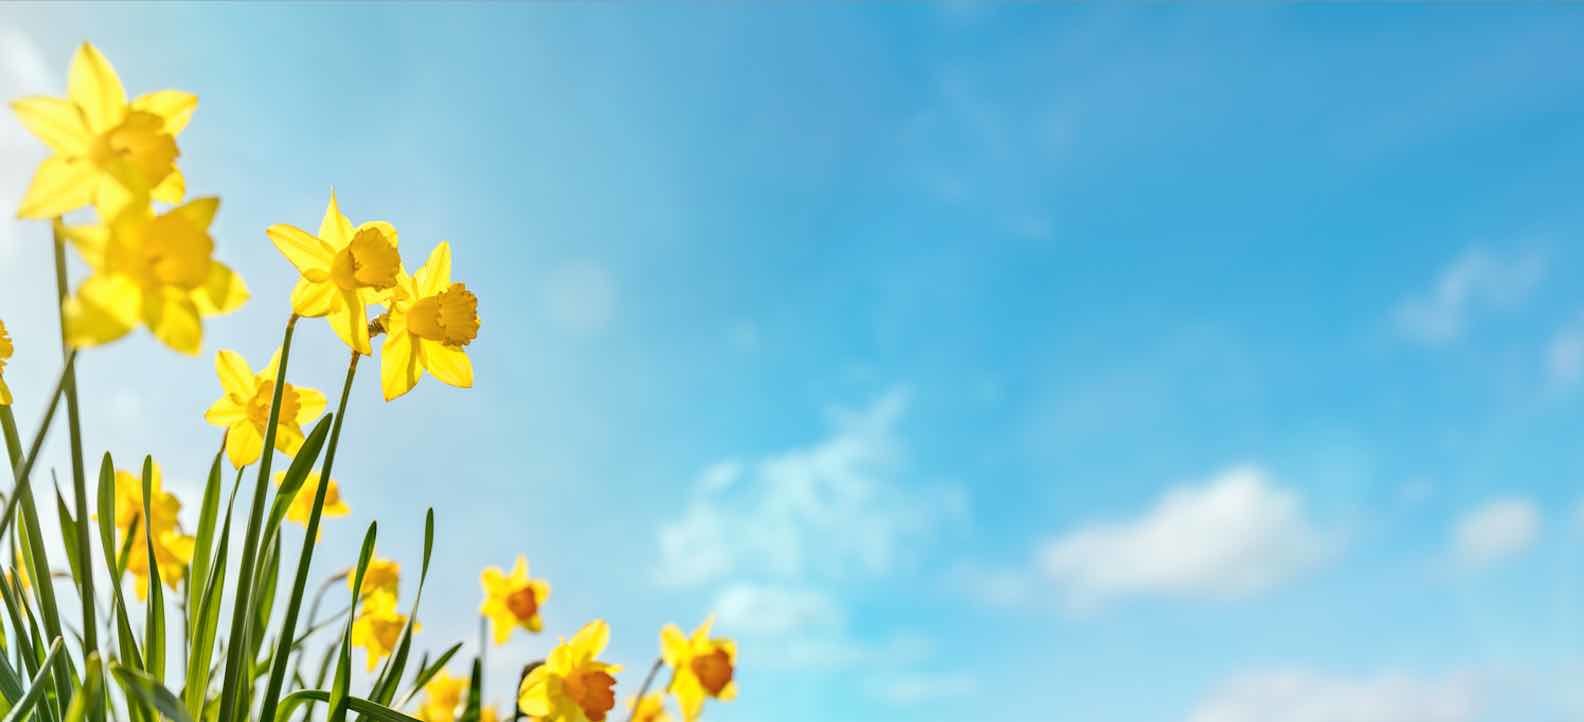 daffodils-and-sky